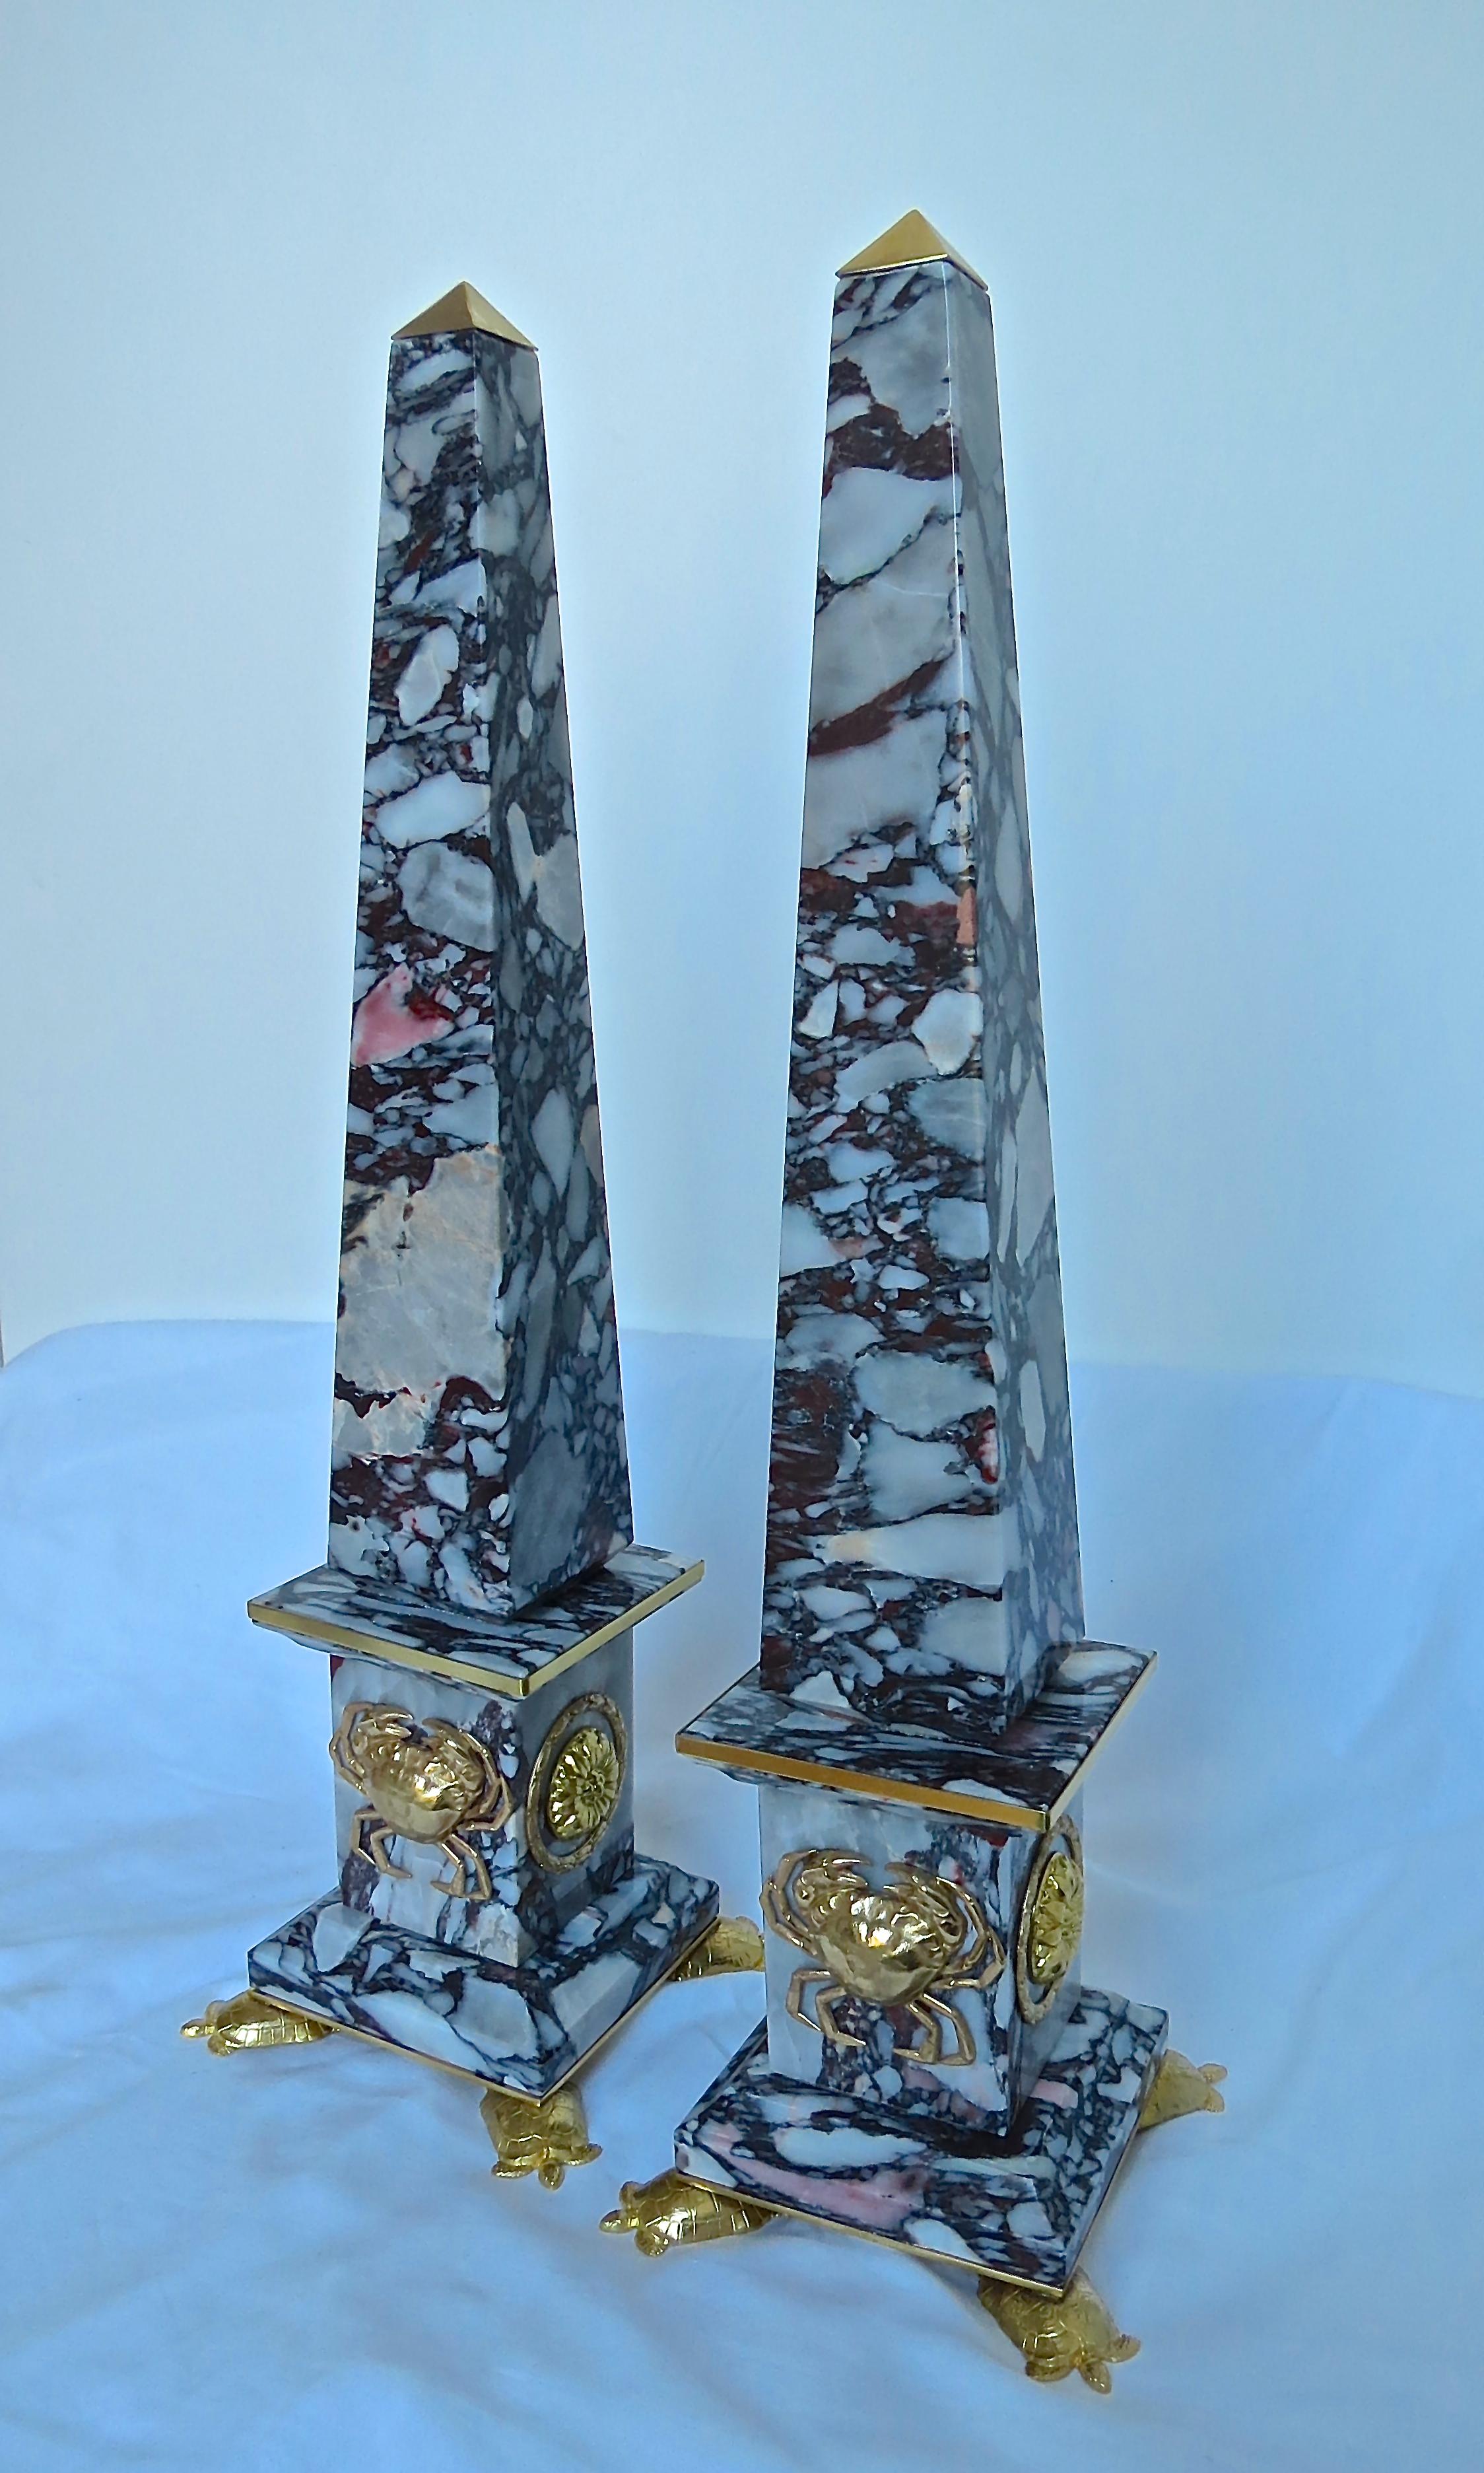 Paar italienische Obelisken aus Marmor und Bronze Krabben -Grand Tour Kollektion- hergestellt von Lorenzo Ciompi, 2018.
Entworfen, produziert und ausgeführt direkt und exklusiv für die Galerie Compendio in einer limitierten Auflage von 10